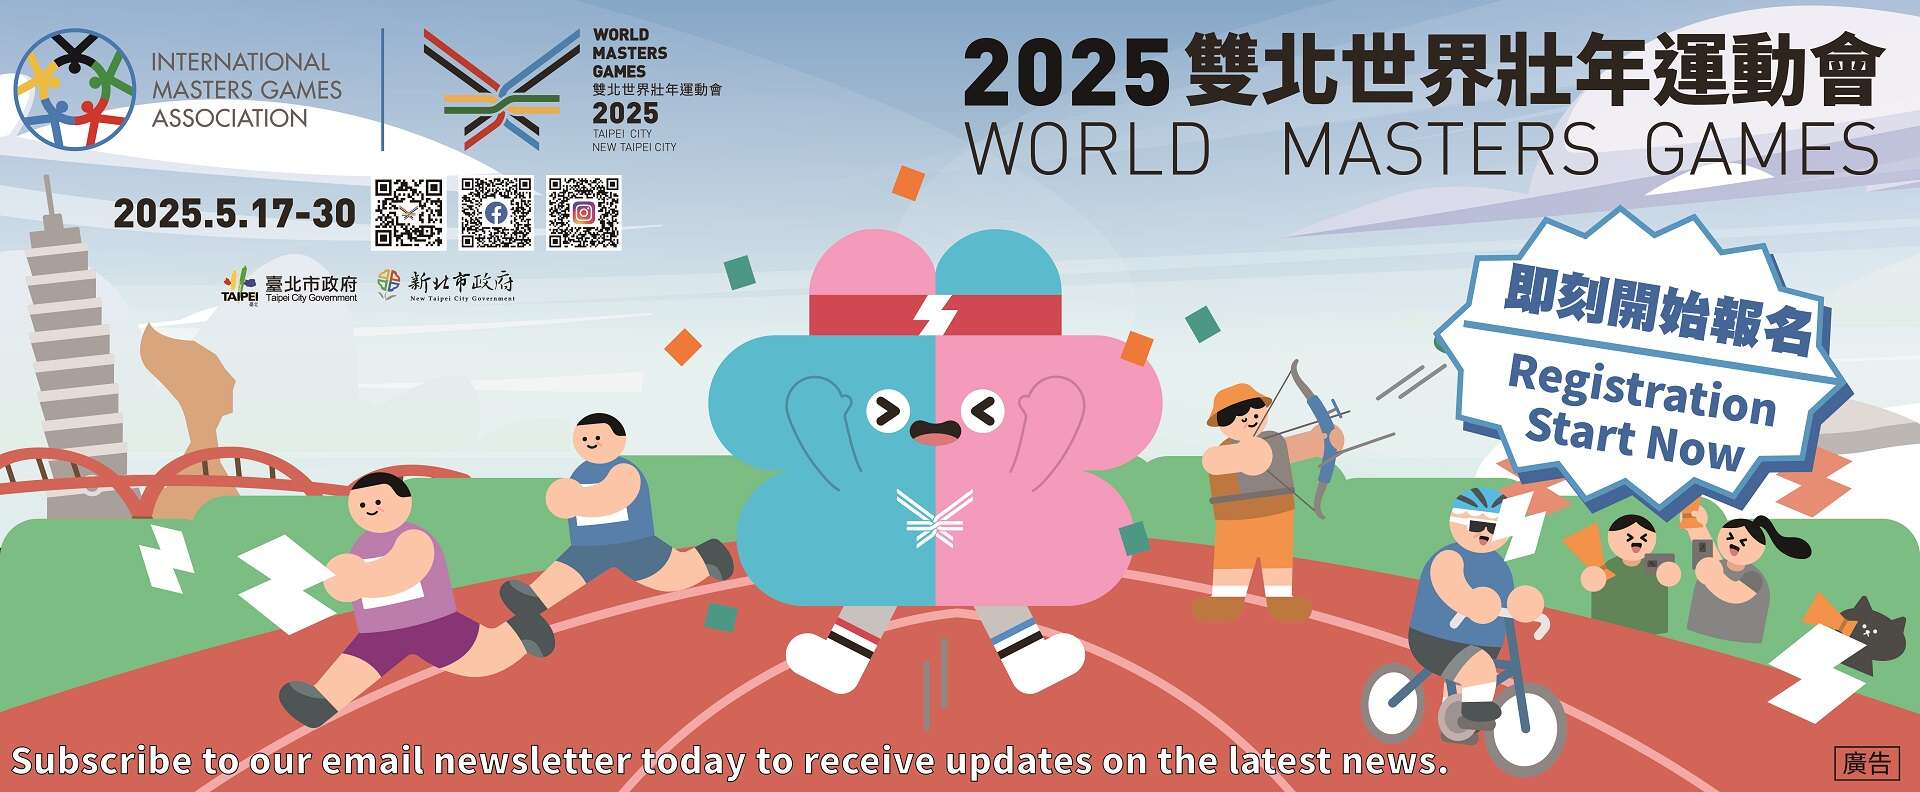 World Masters Games 2025Taipei & New Taipei City